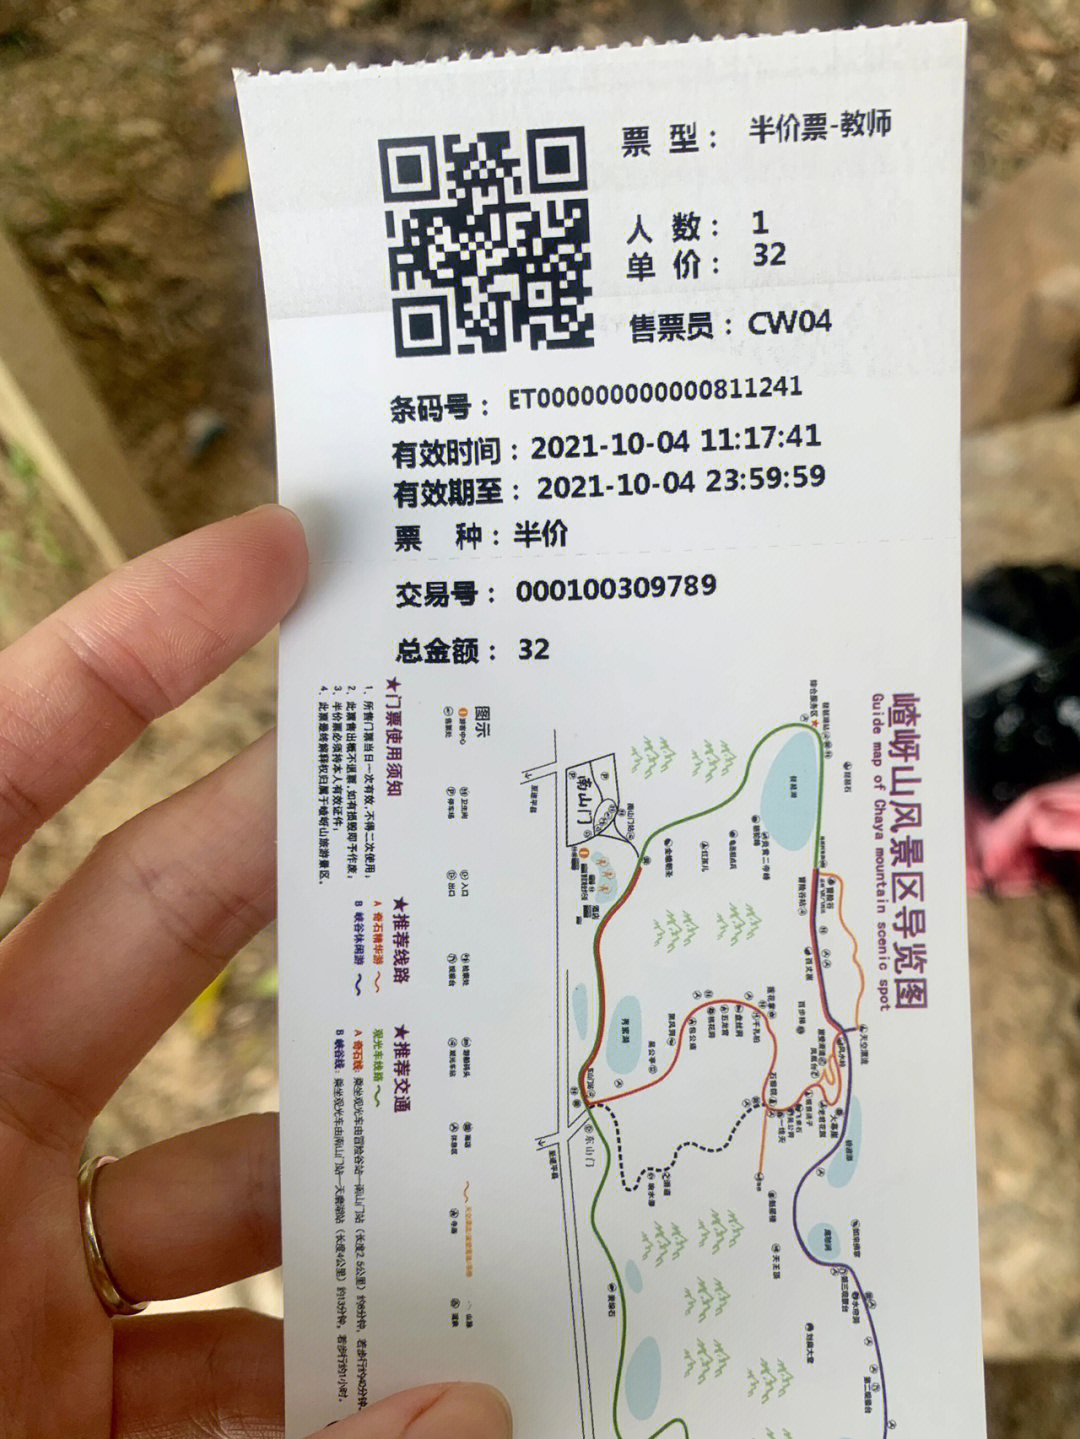 深圳石岩湖公园门票图片